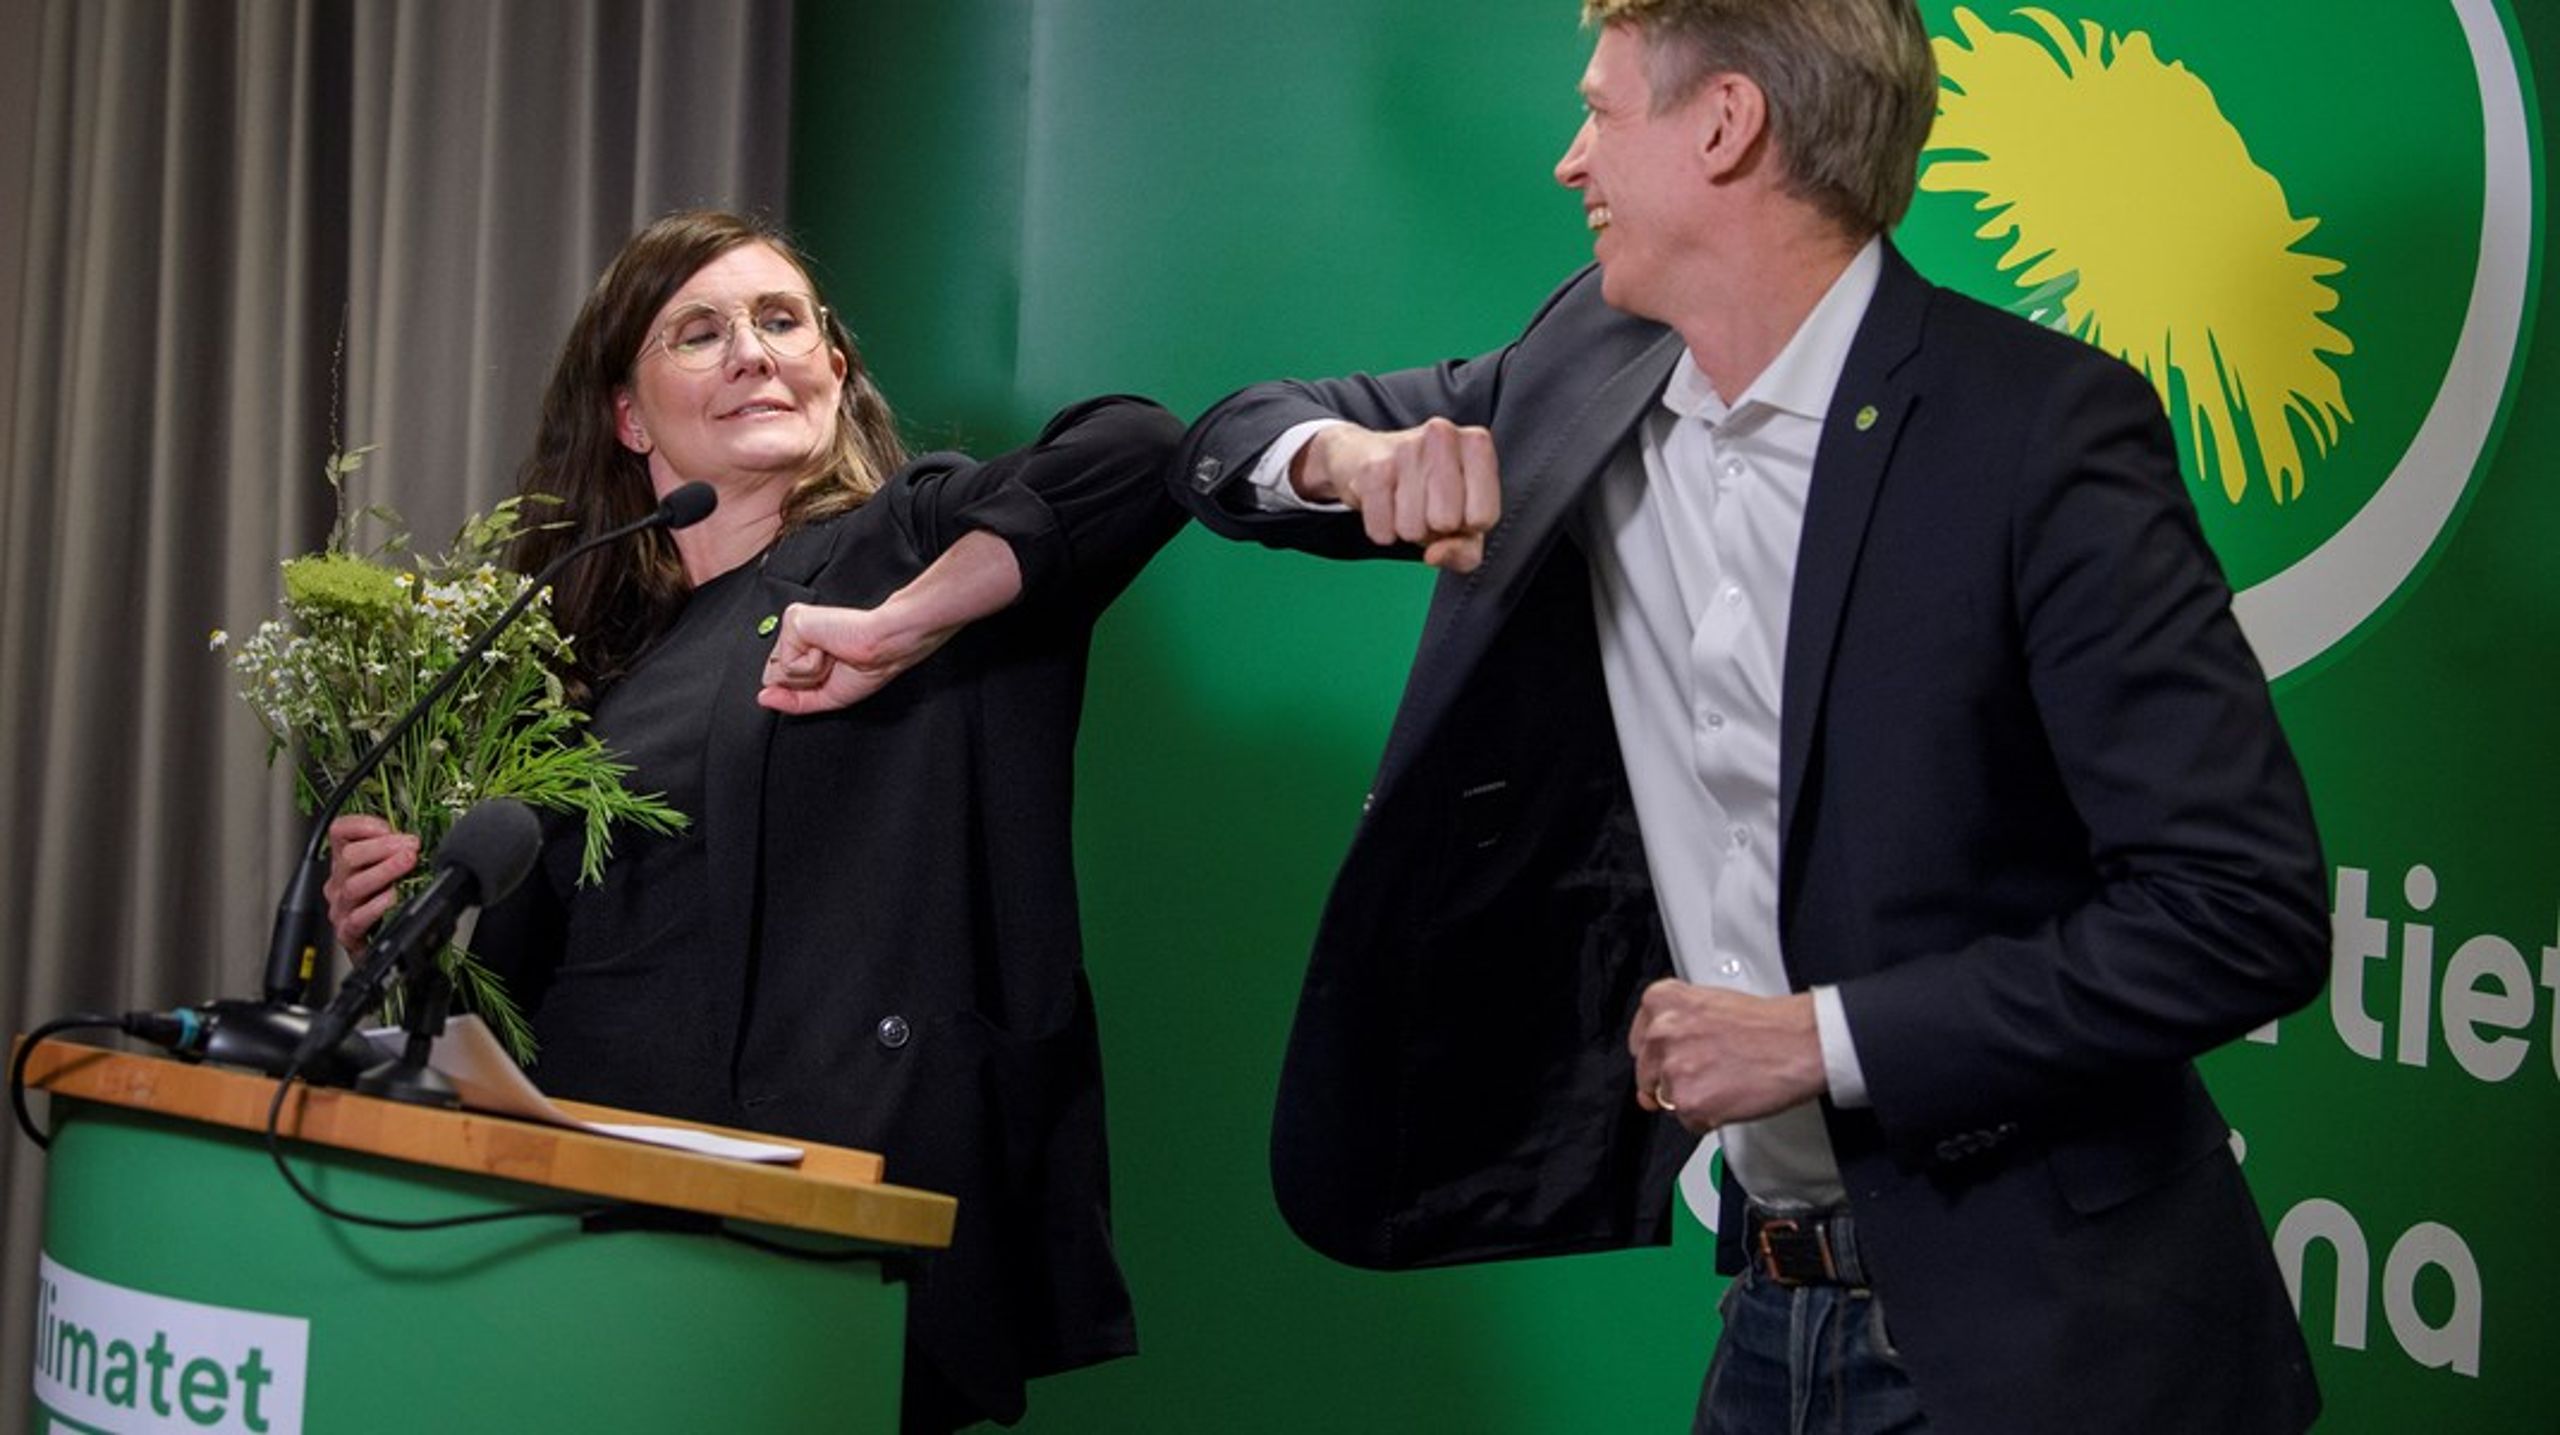 Märta Stenevi och Per Bolund (MP). Debattörerna anser att Miljöpartiet borde städa rent framför egen dörr när det gäller demokrati och yttrandefrihet.